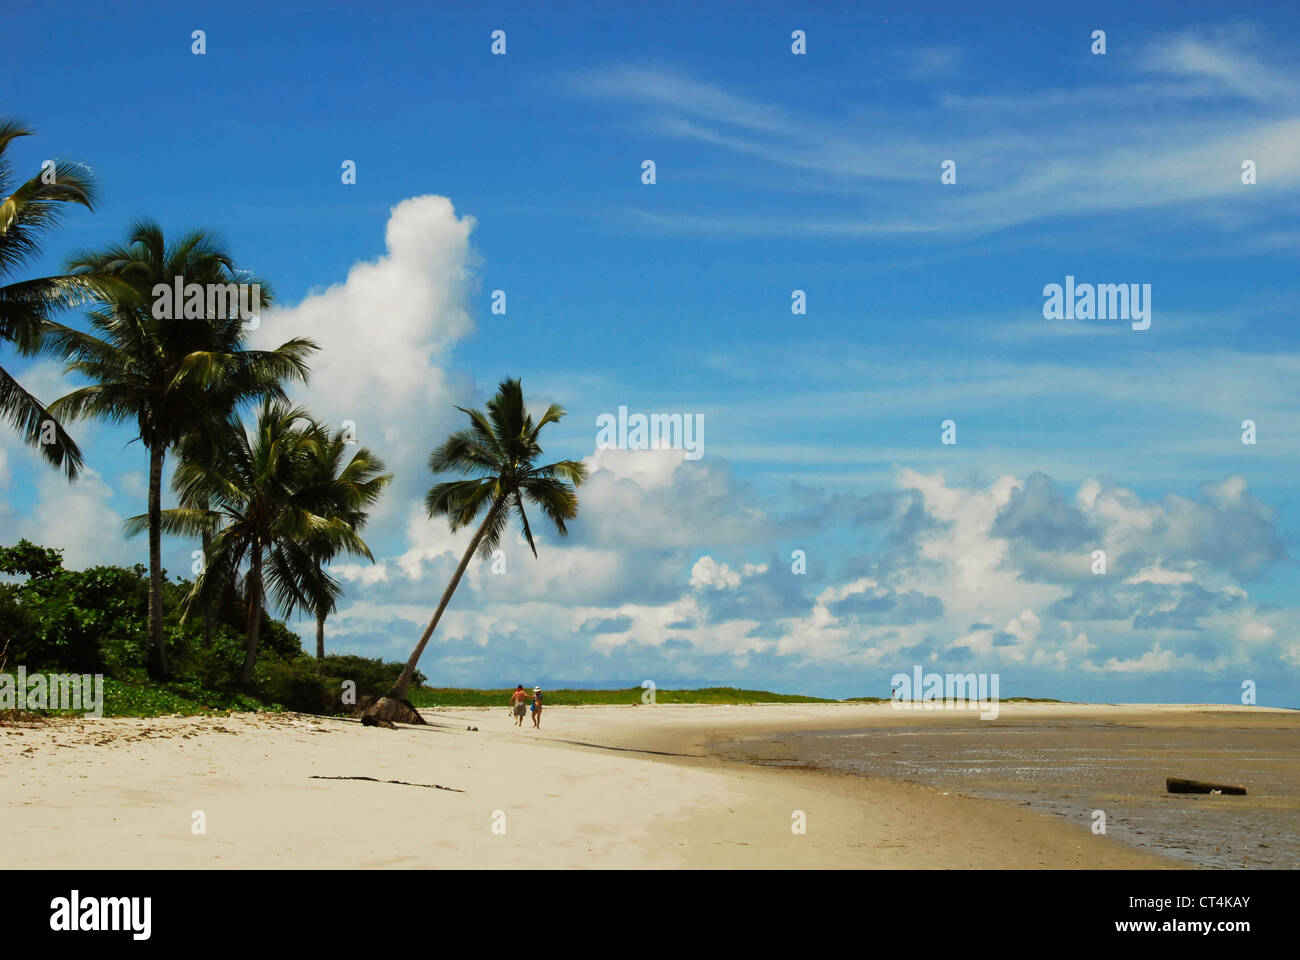 Il Brasile, Pernambuco, Ilha de Itamaraca, Corrao de Aviao, spiaggia bianca con palme Foto Stock